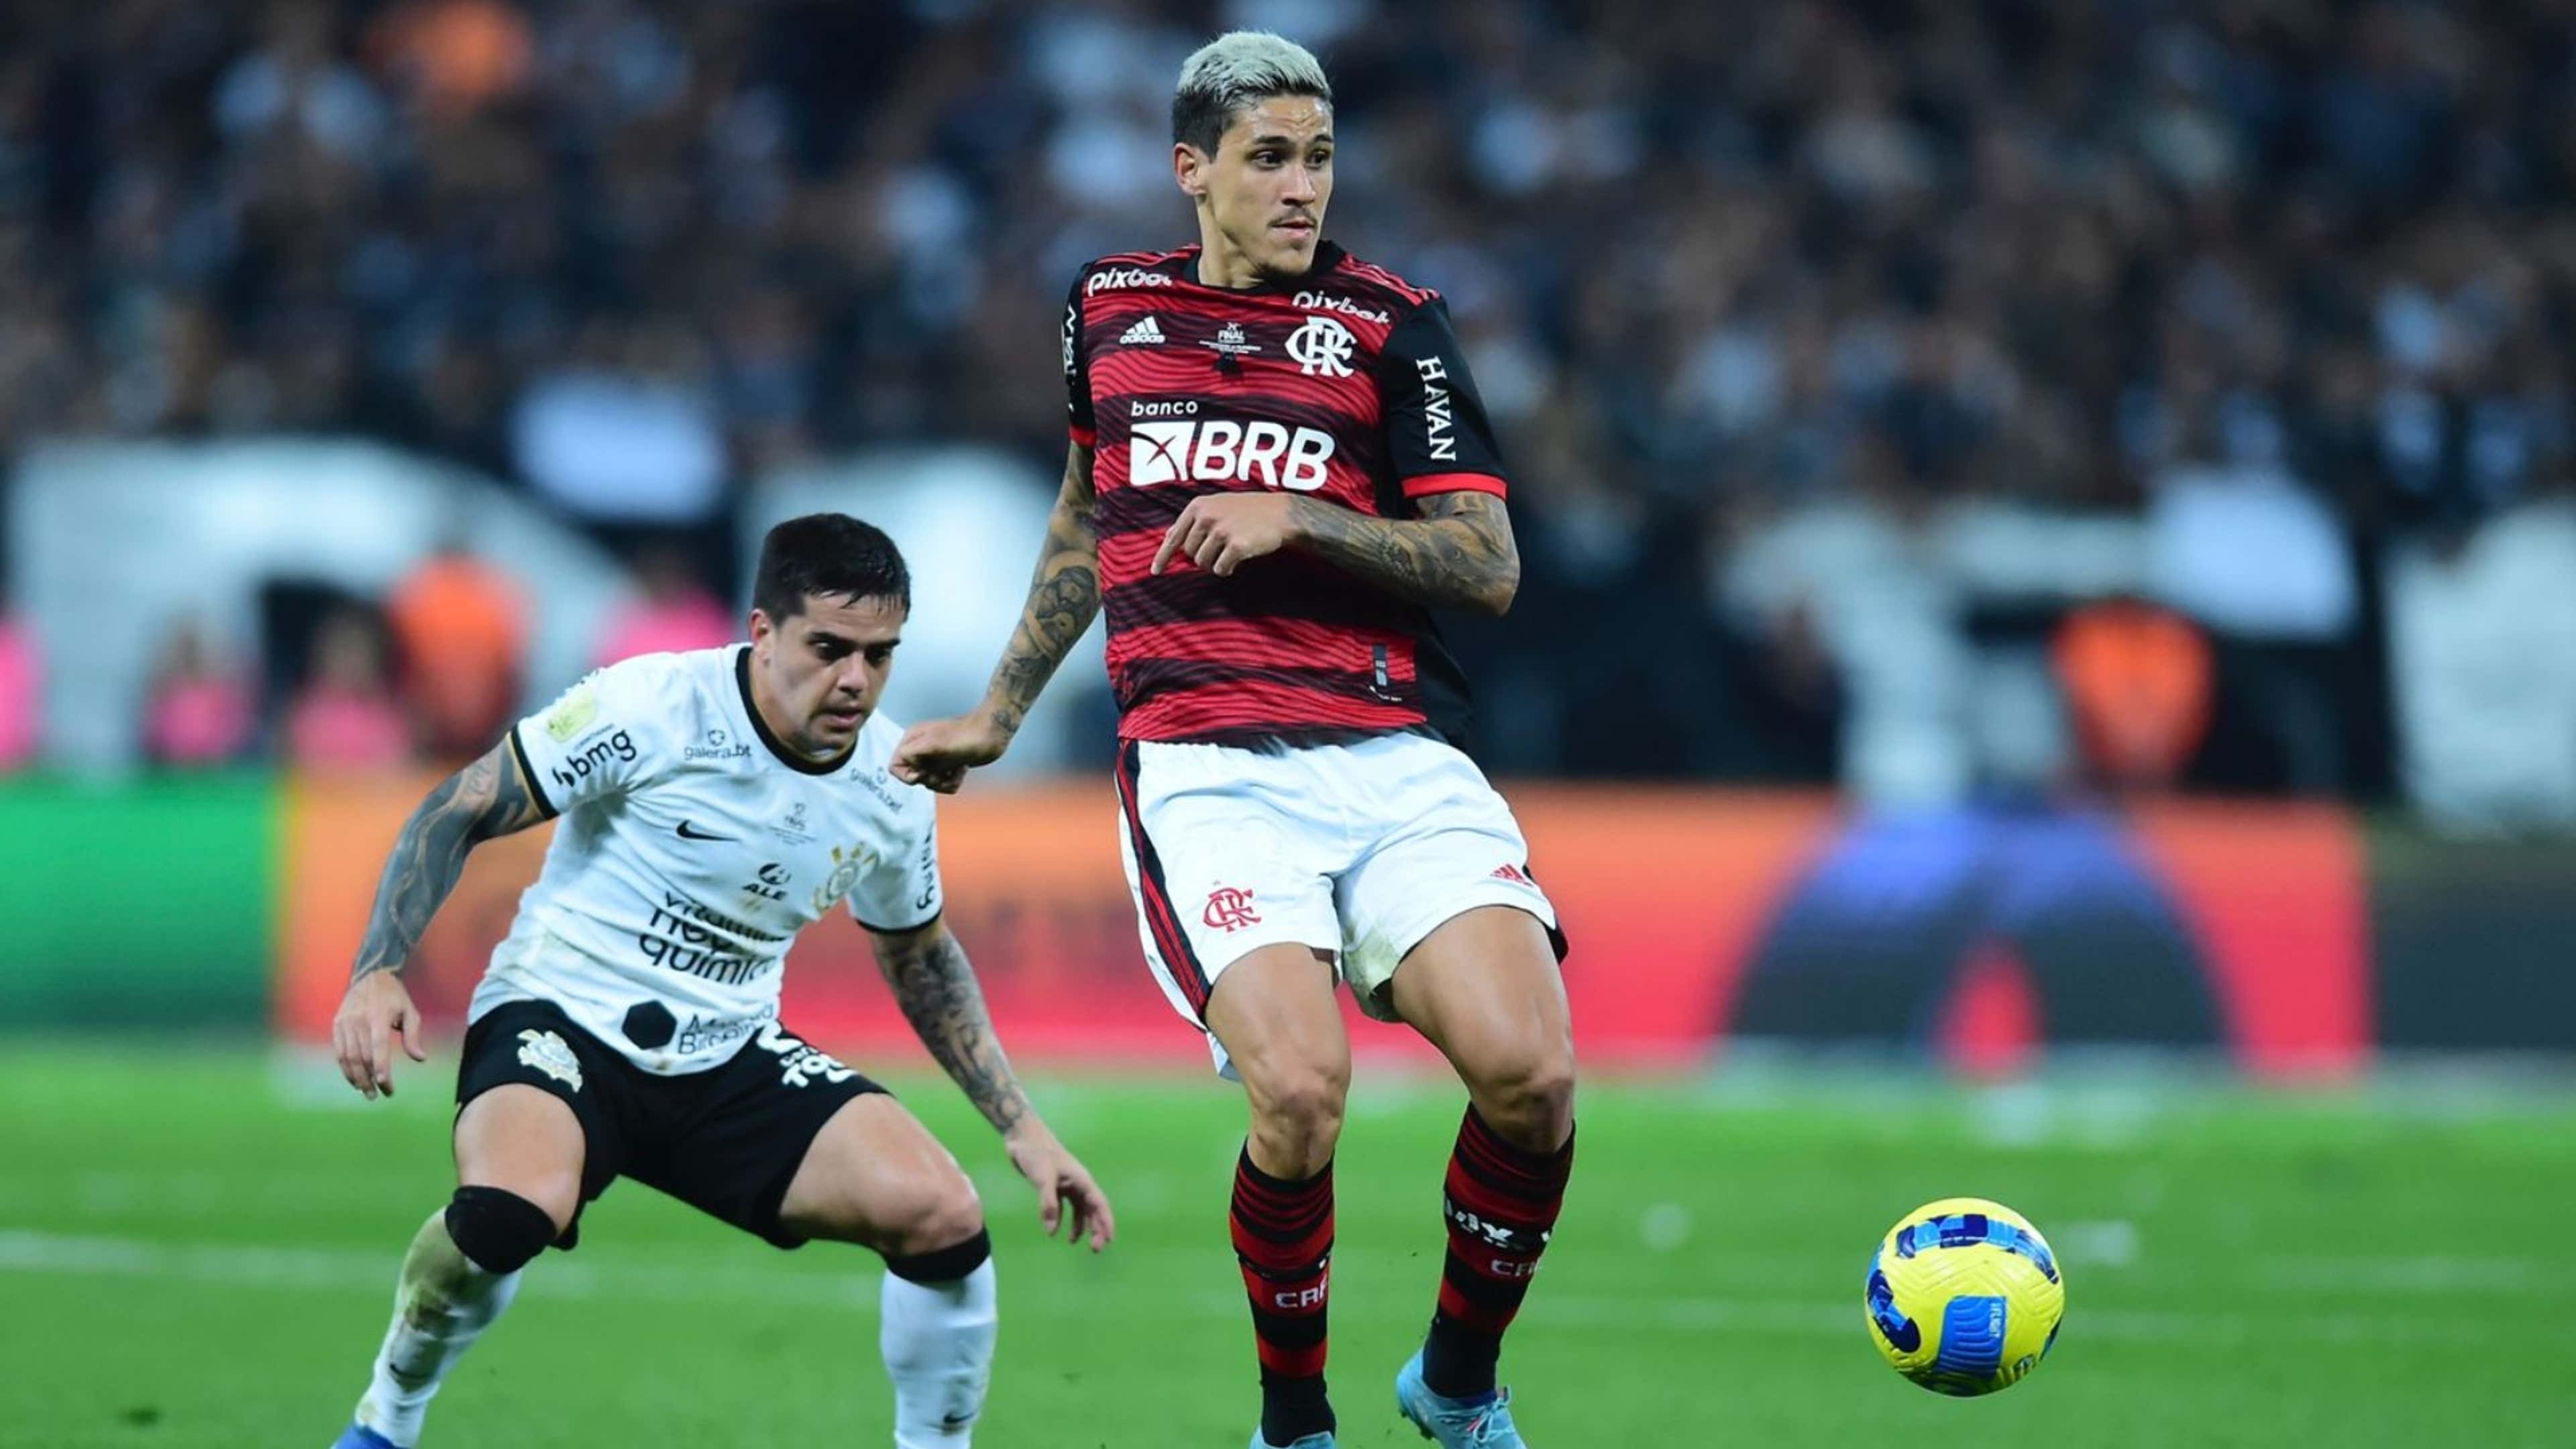 Corinthians x Flamengo: saiba onde assistir à final da Copa do Brasil